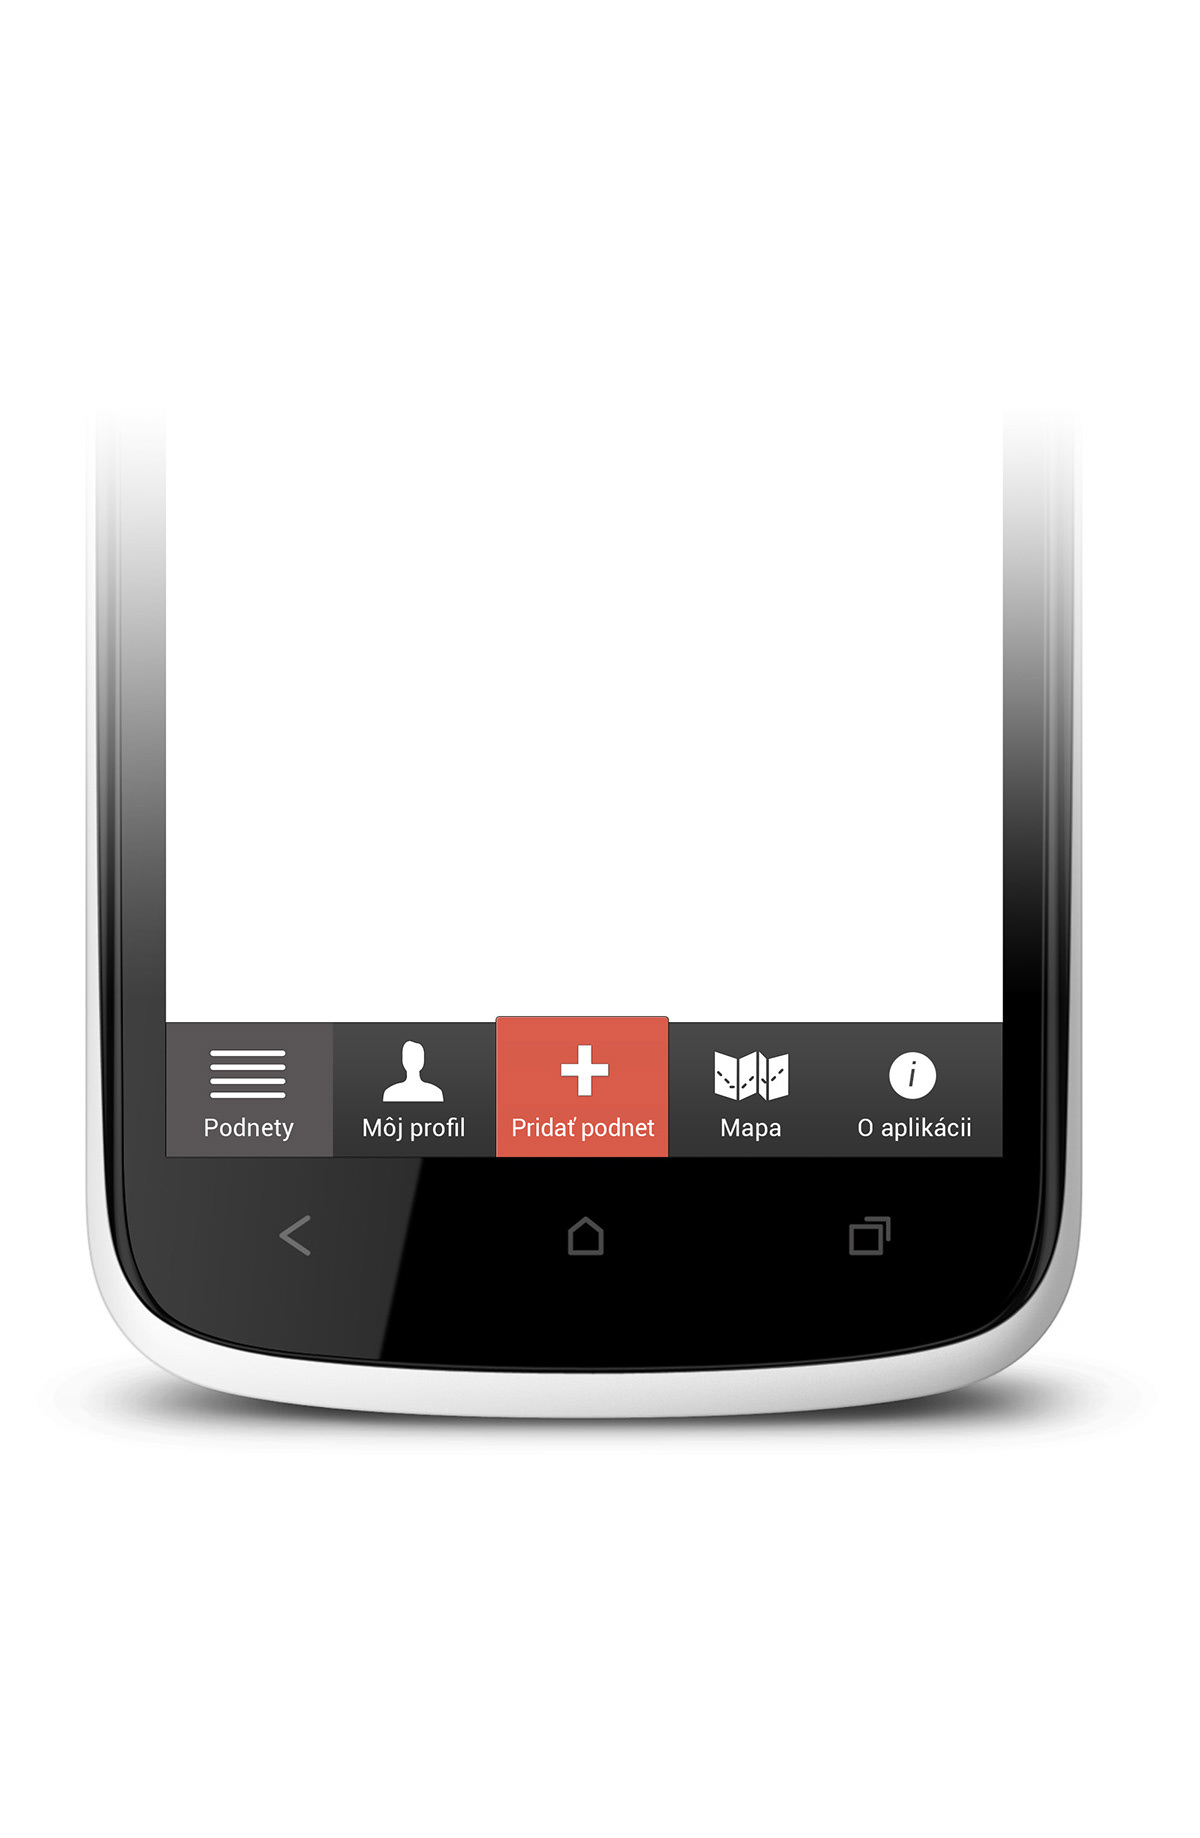 android UI ux design app